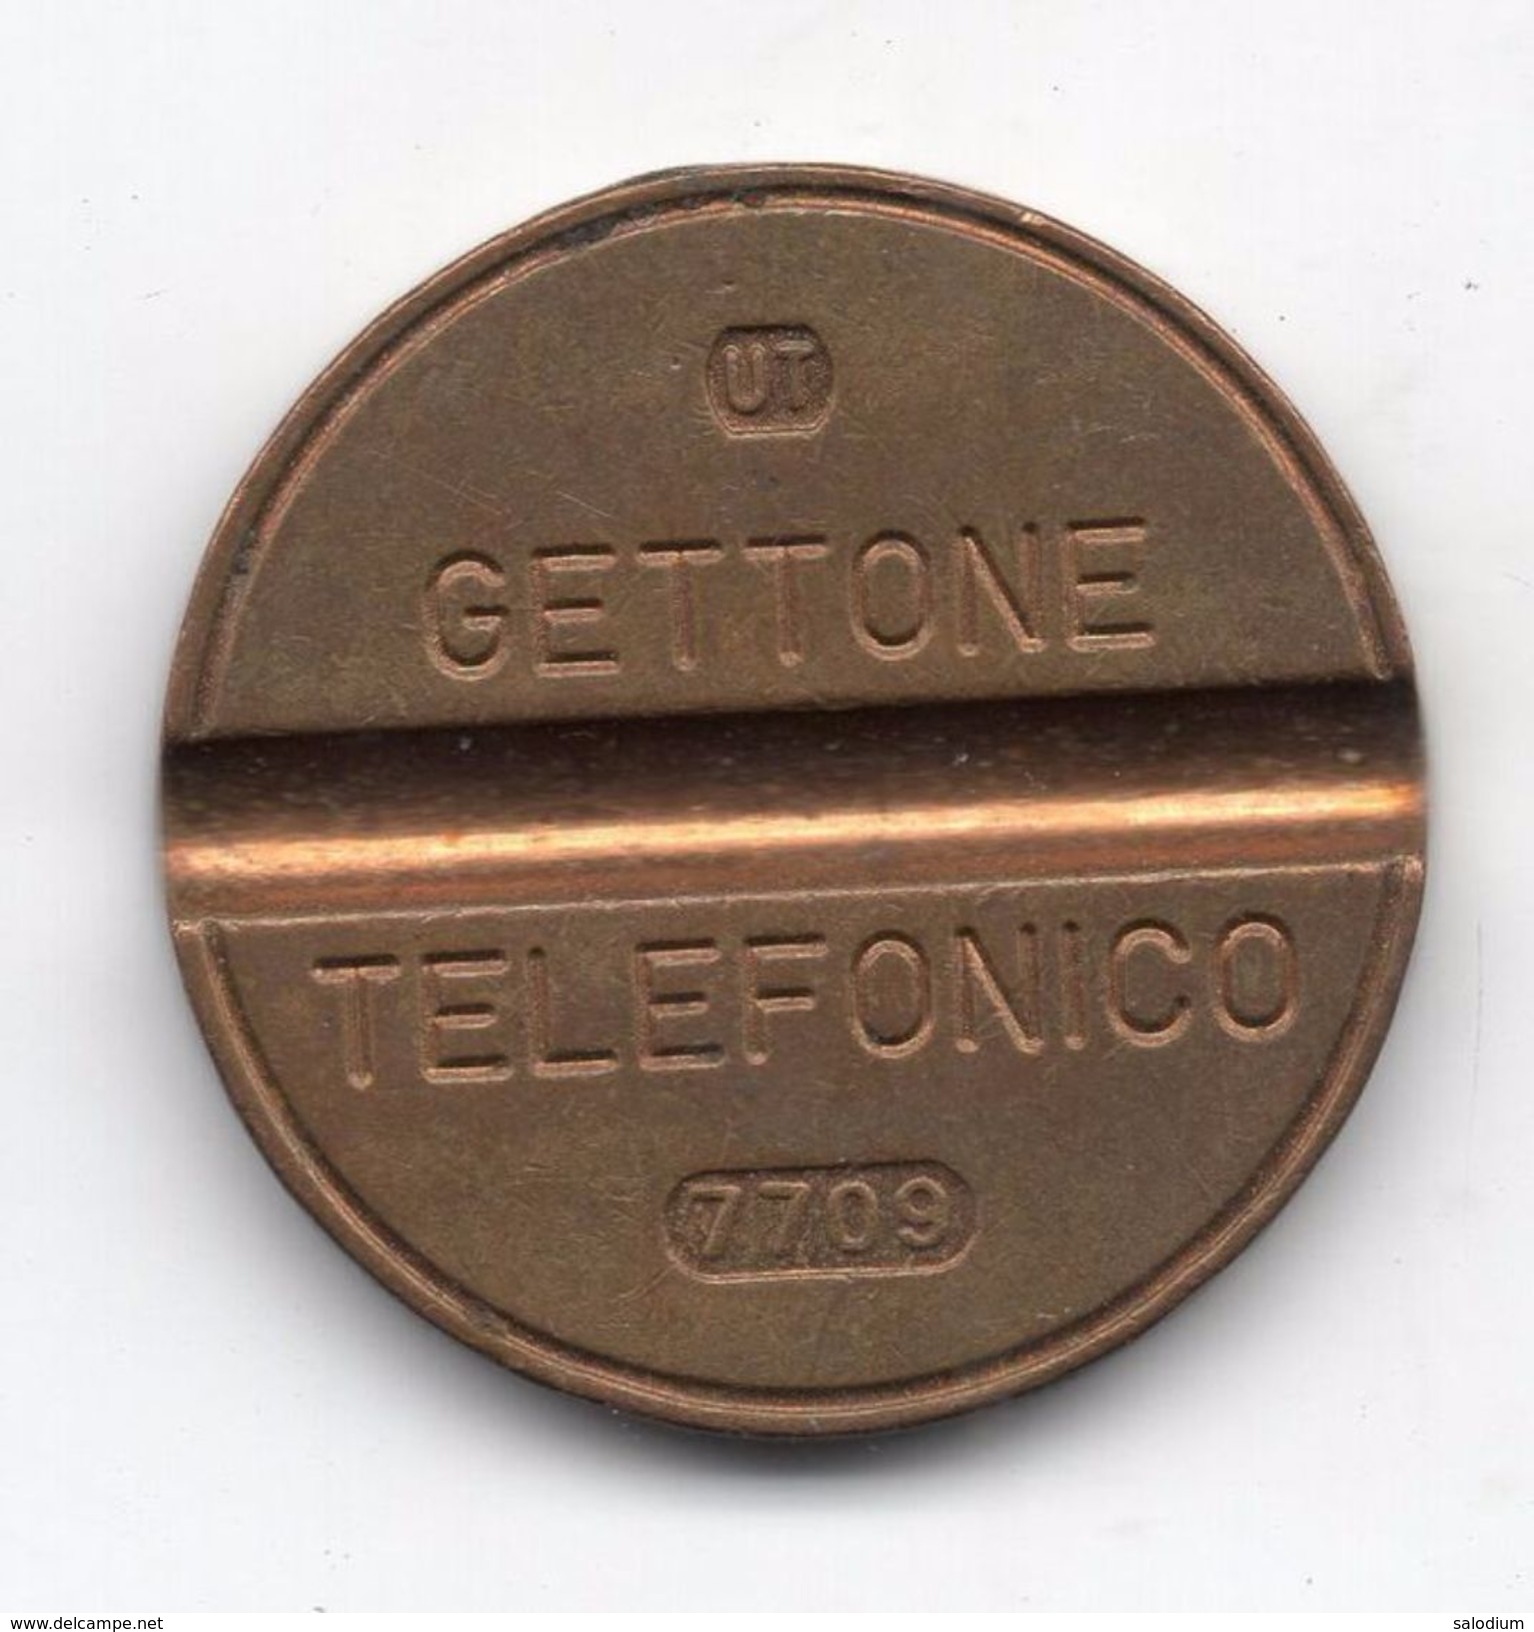 Gettone Telefonico 7709 Token Telephone - (Id-800) - Professionnels/De Société